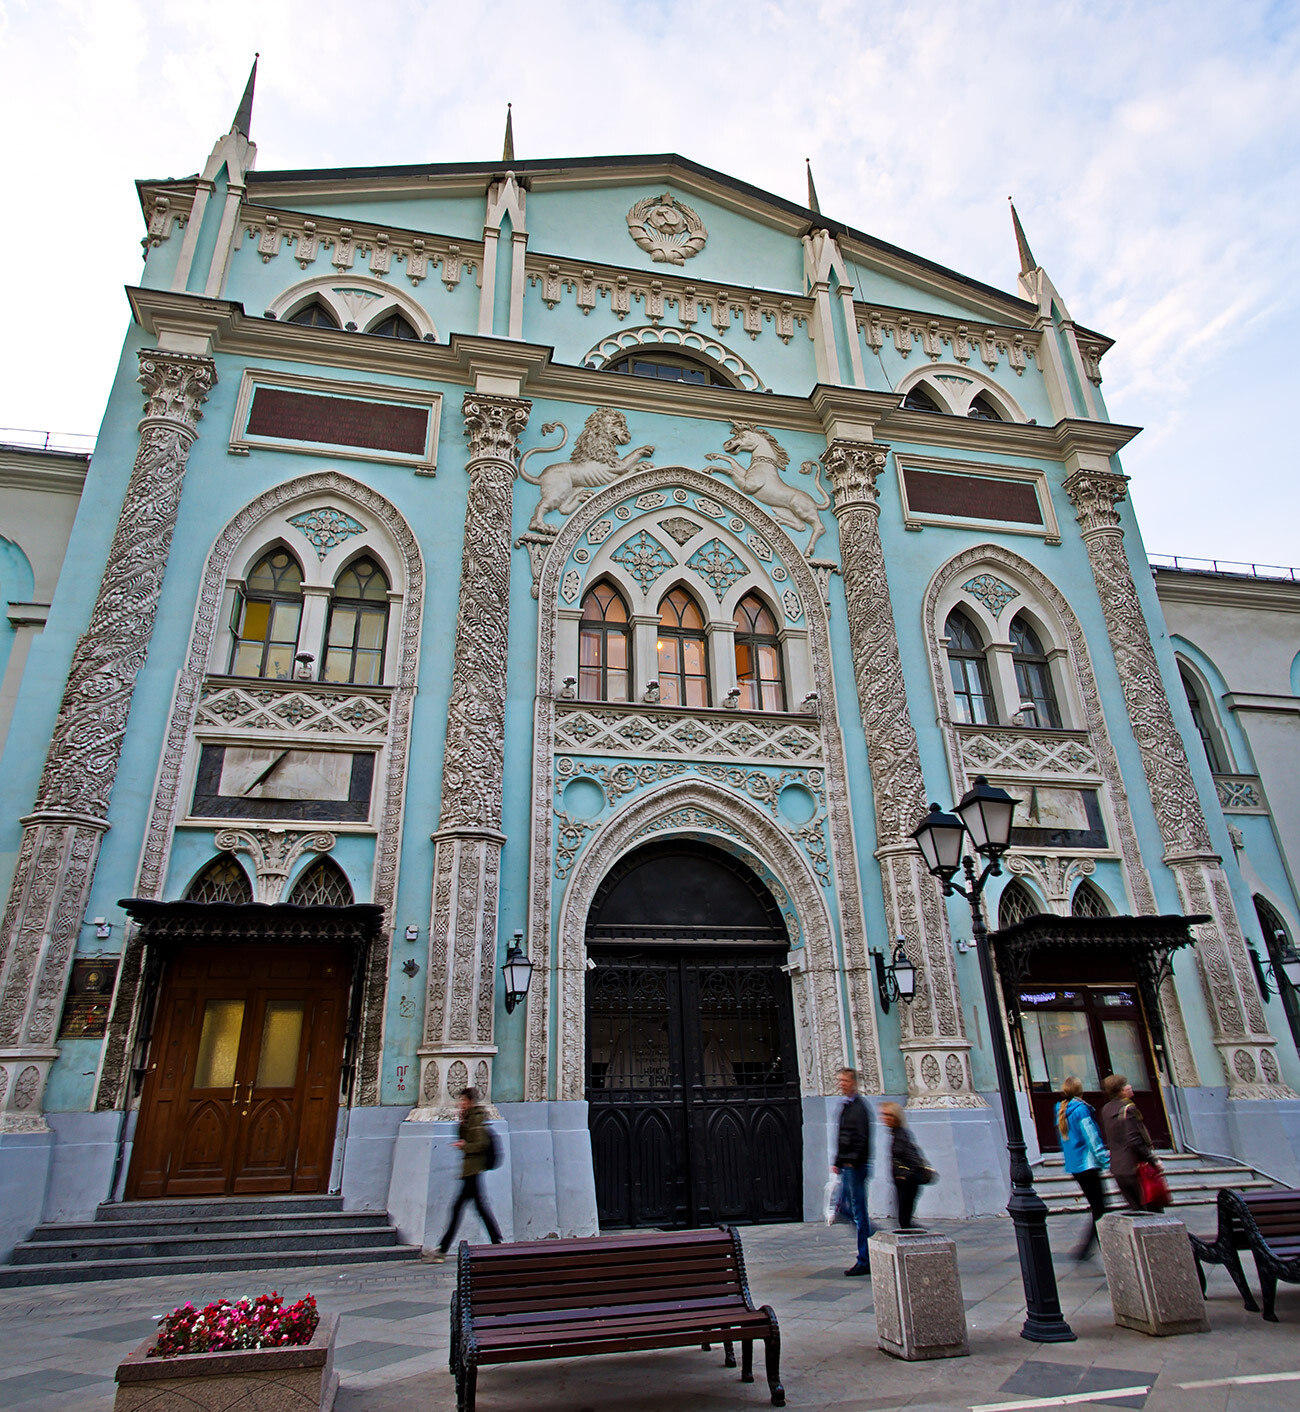 L'antica tipografia di Mosca, oggi sede dell'Istituto e Archivio di Storia 